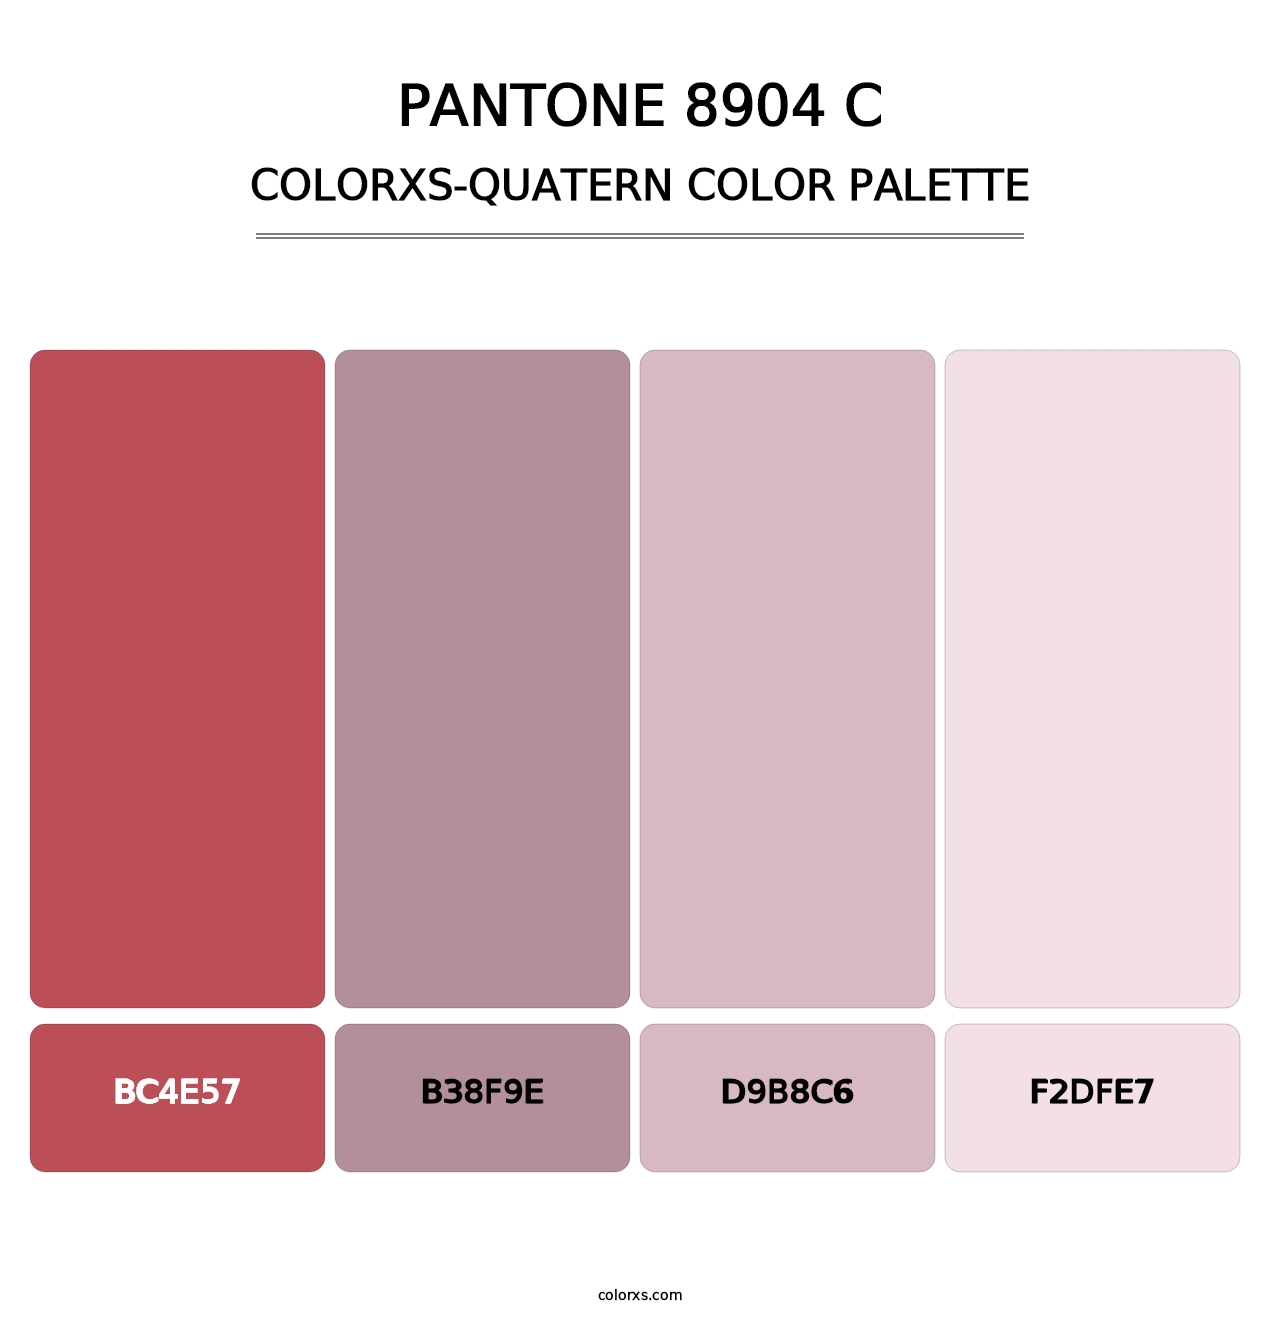 PANTONE 8904 C - Colorxs Quatern Palette